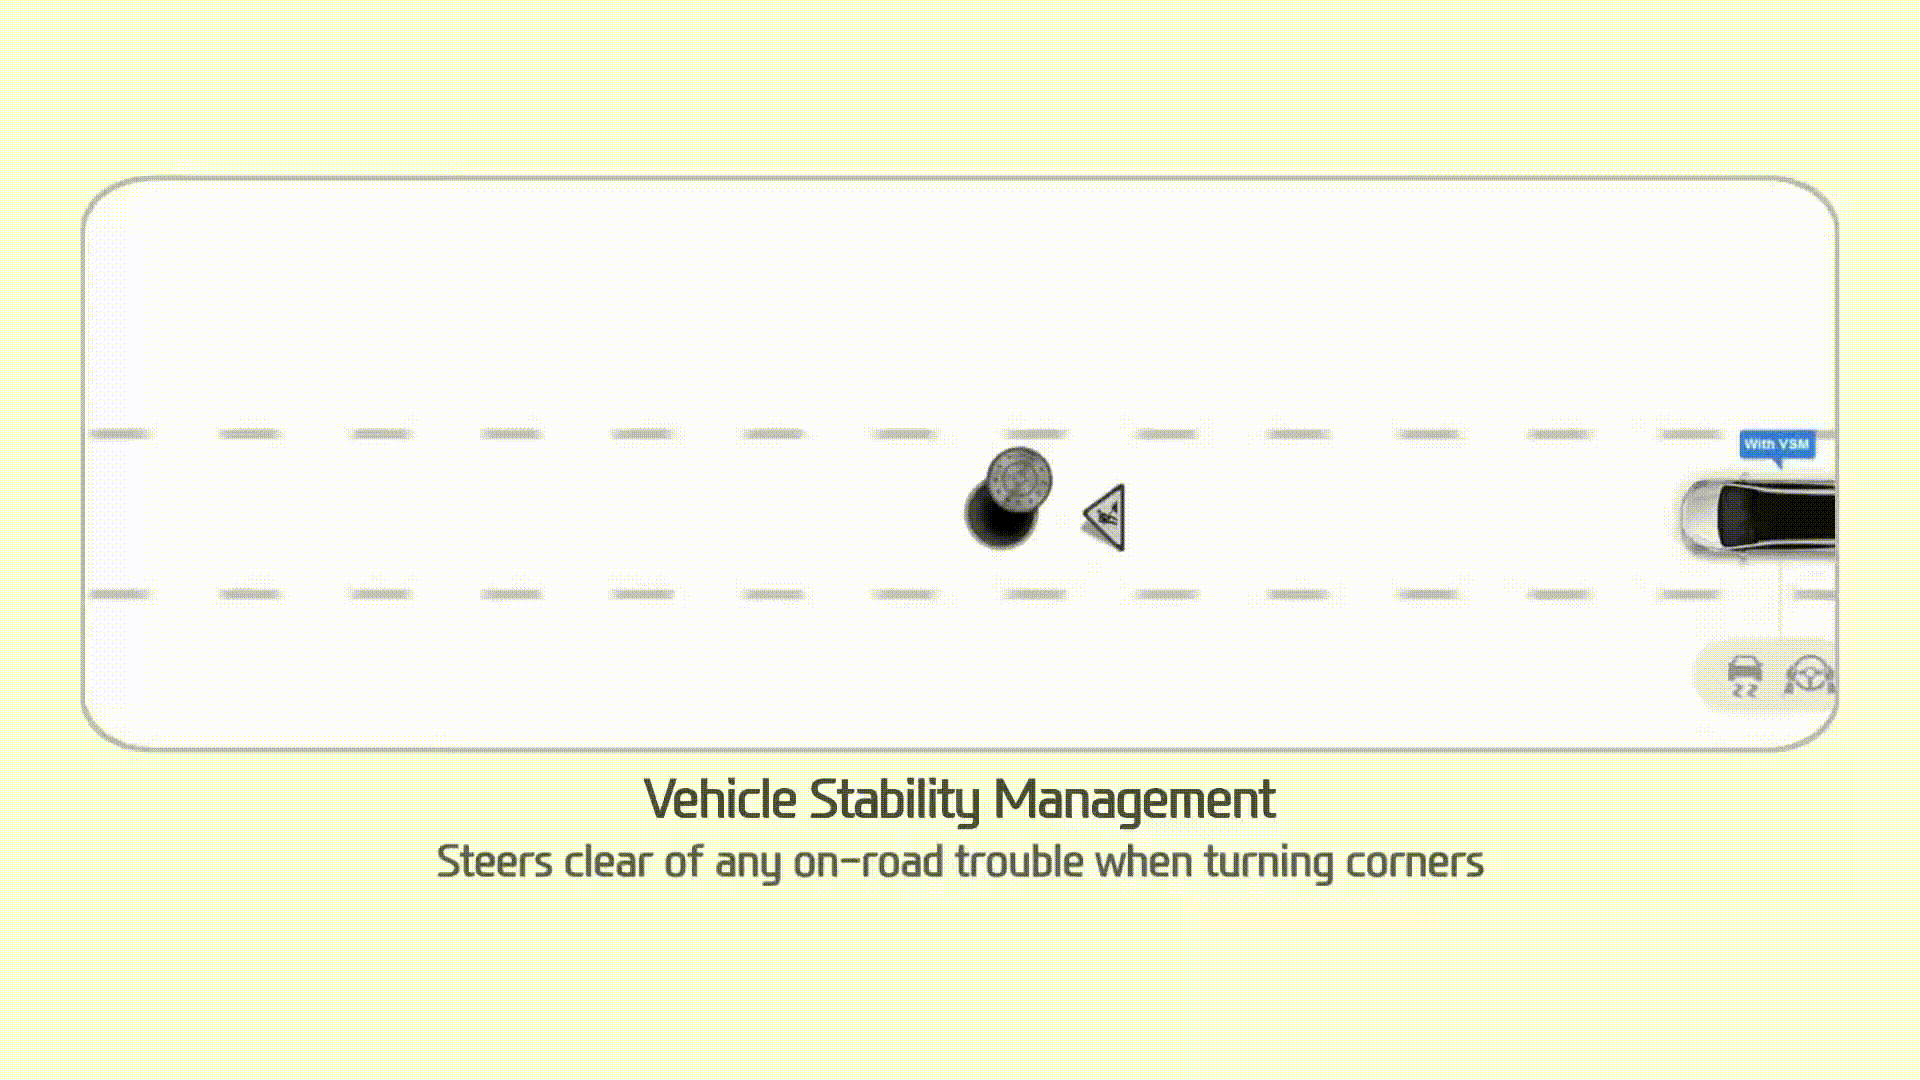 Hệ thống ổn định chống trượt thân xe (Vehicle Stability Management - VSM)